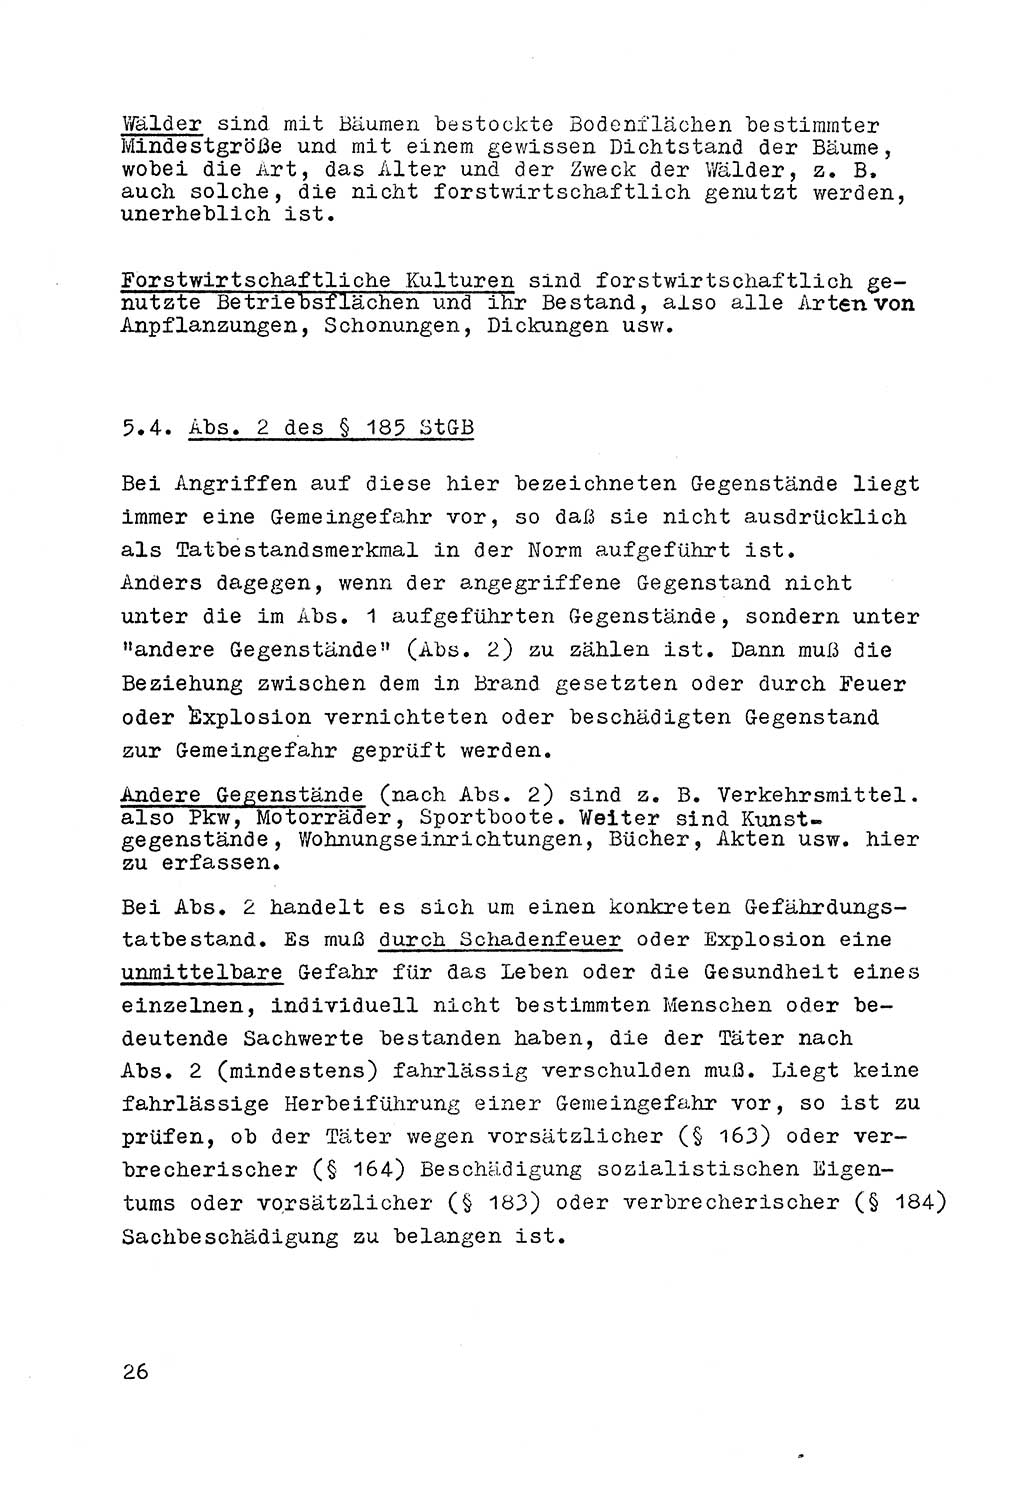 Strafrecht der DDR (Deutsche Demokratische Republik), Besonderer Teil, Lehrmaterial, Heft 7 1970, Seite 26 (Strafr. DDR BT Lehrmat. H. 7 1970, S. 26)